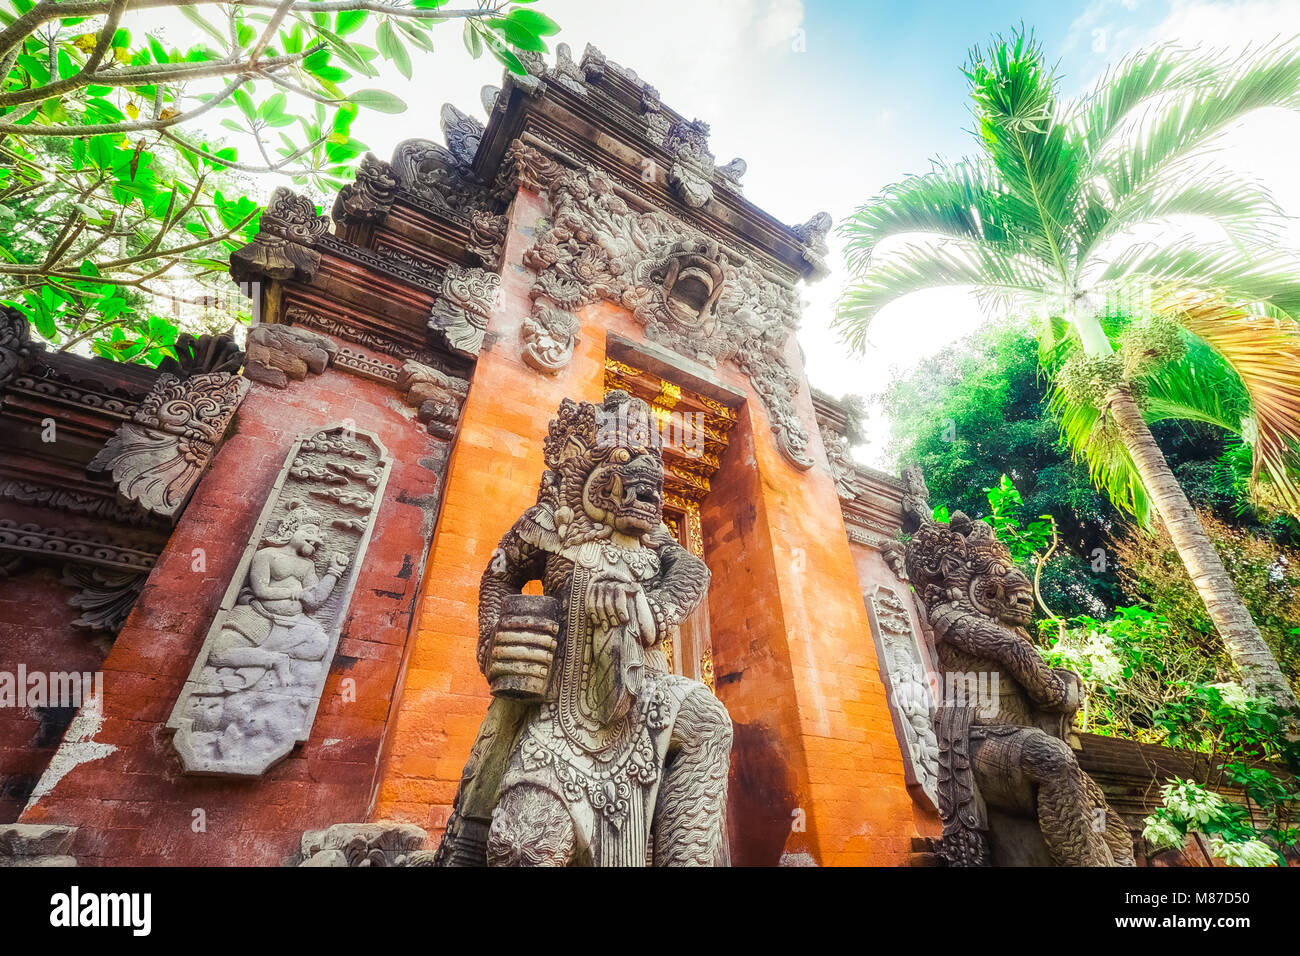 Grand et majestueux Lion Barong statues rock garde près de culte murs éclairés par soleil à sunny day, Temple de Gunung Kawi complexe, Bali, Indonésie. Panorami Banque D'Images